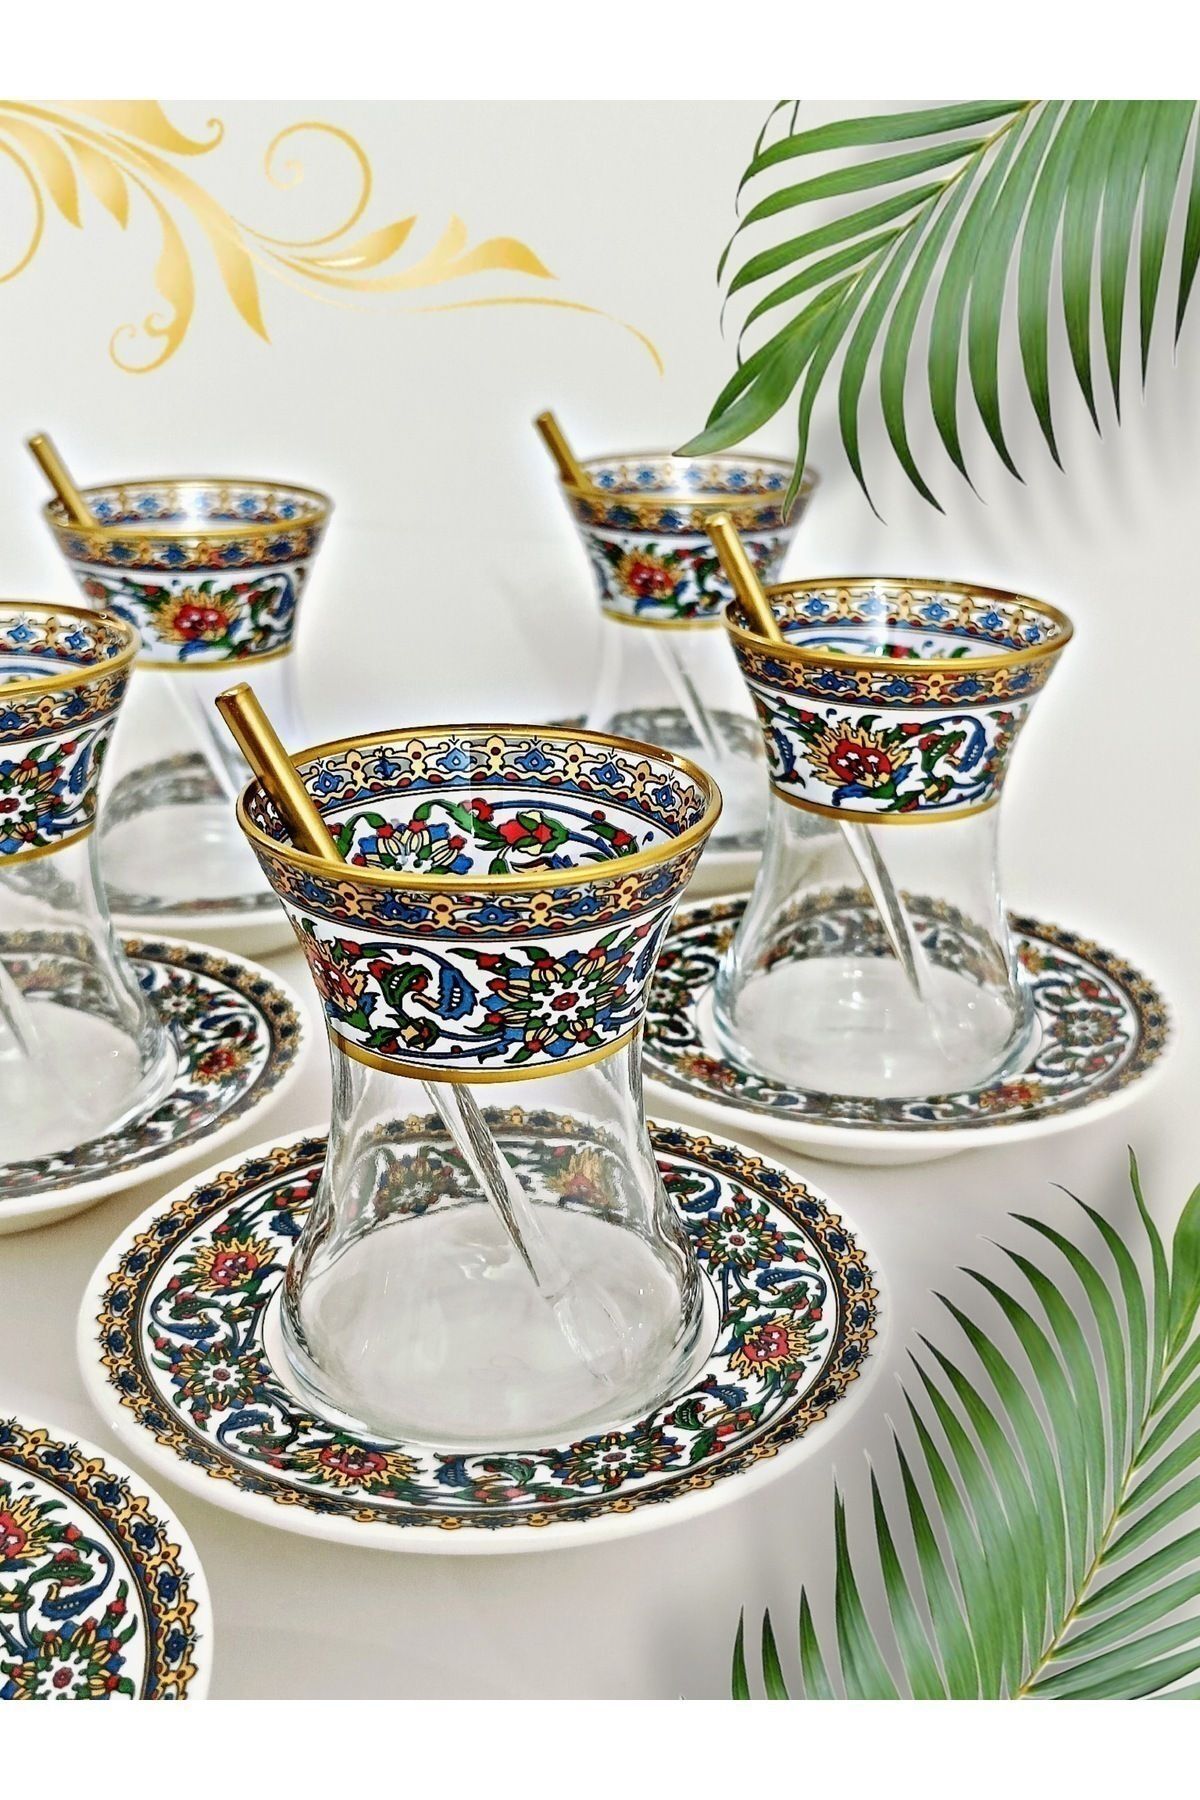 SAMSA Altın Bitkisel Çini Desenli Cam Porselen 6 Kişilik Çay Seti Tea Set For 6 Persons Premium Porcelain